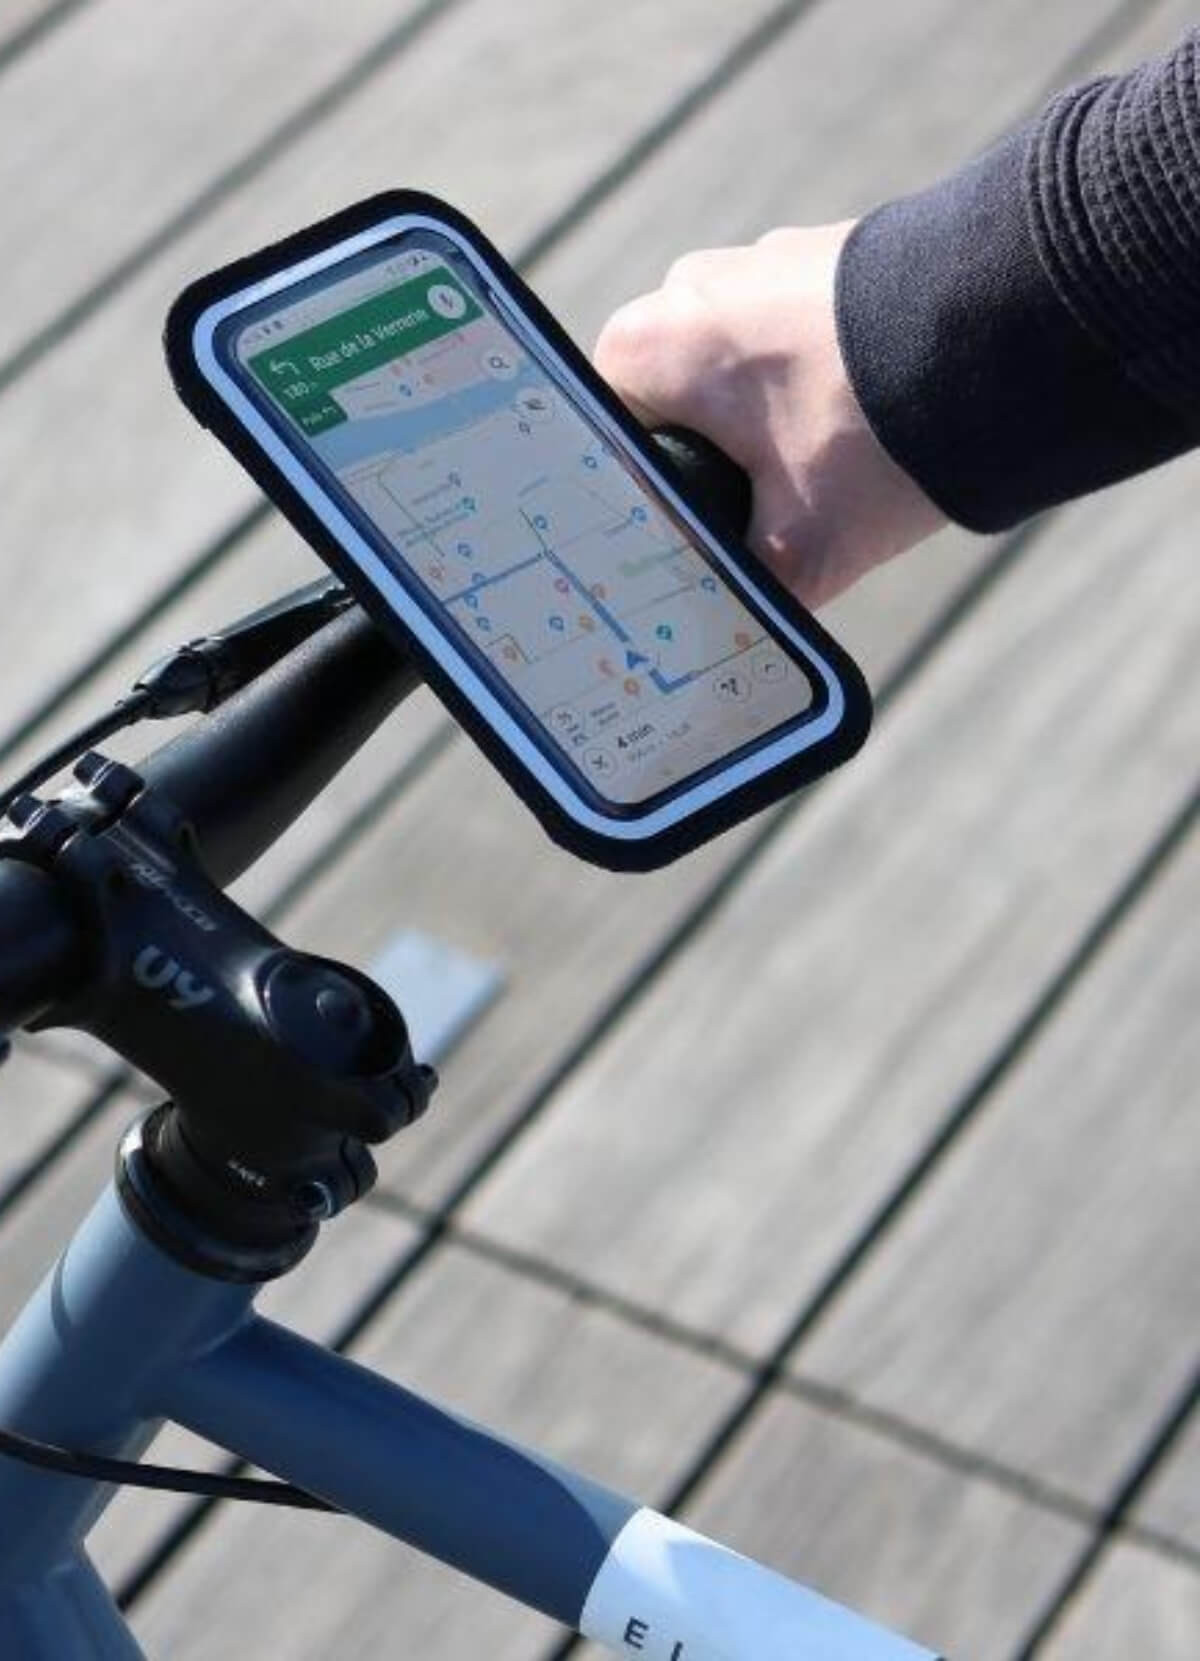 Shapeheart - Support téléphone pour guidon de vélo avec pochette magnétique  détachable